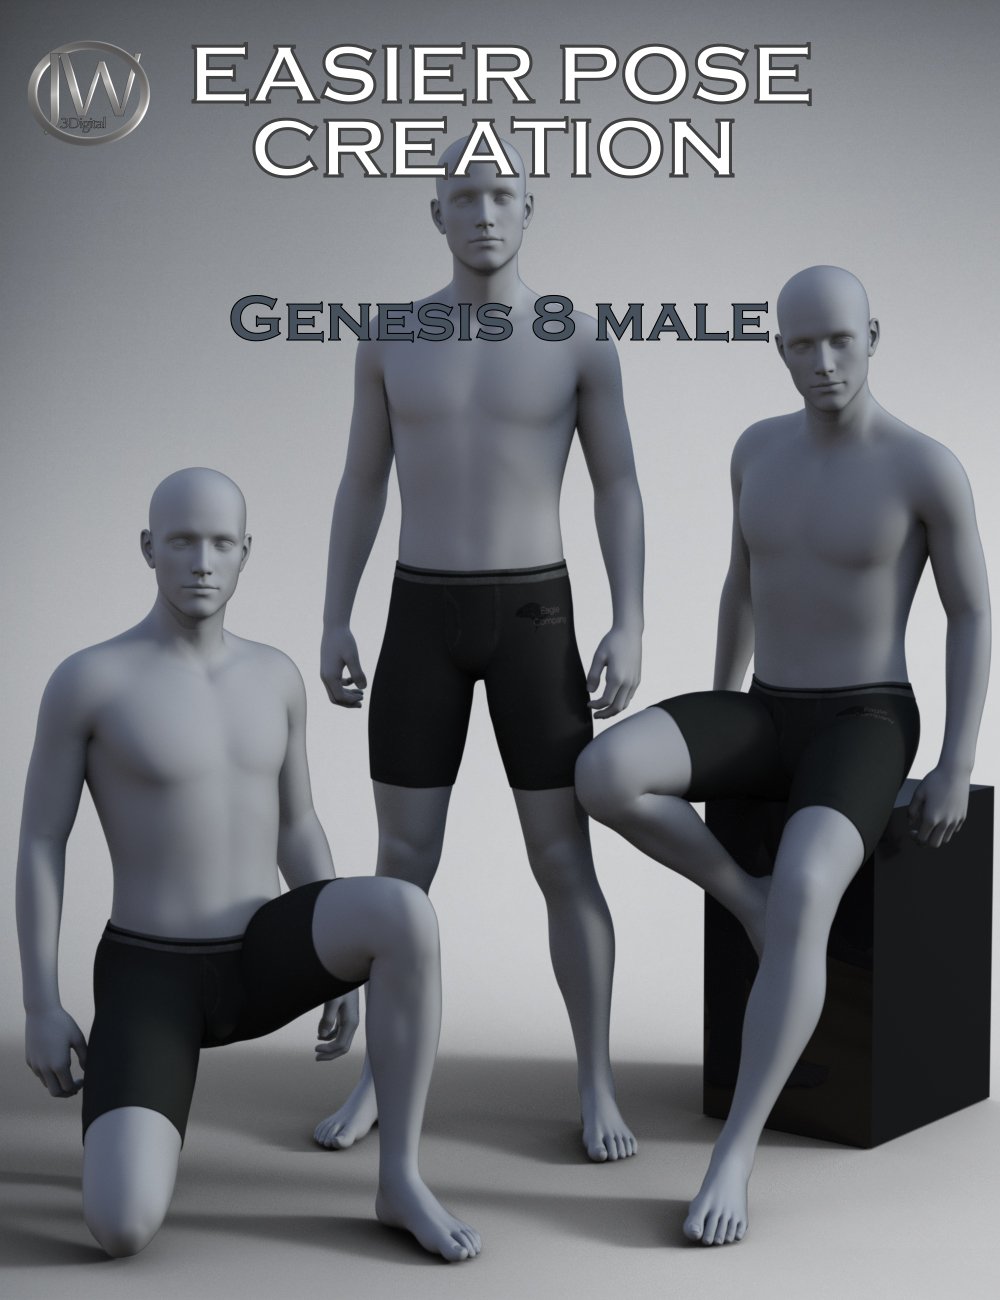 Free 3D Models | Poses | Group Poses | RenderHub